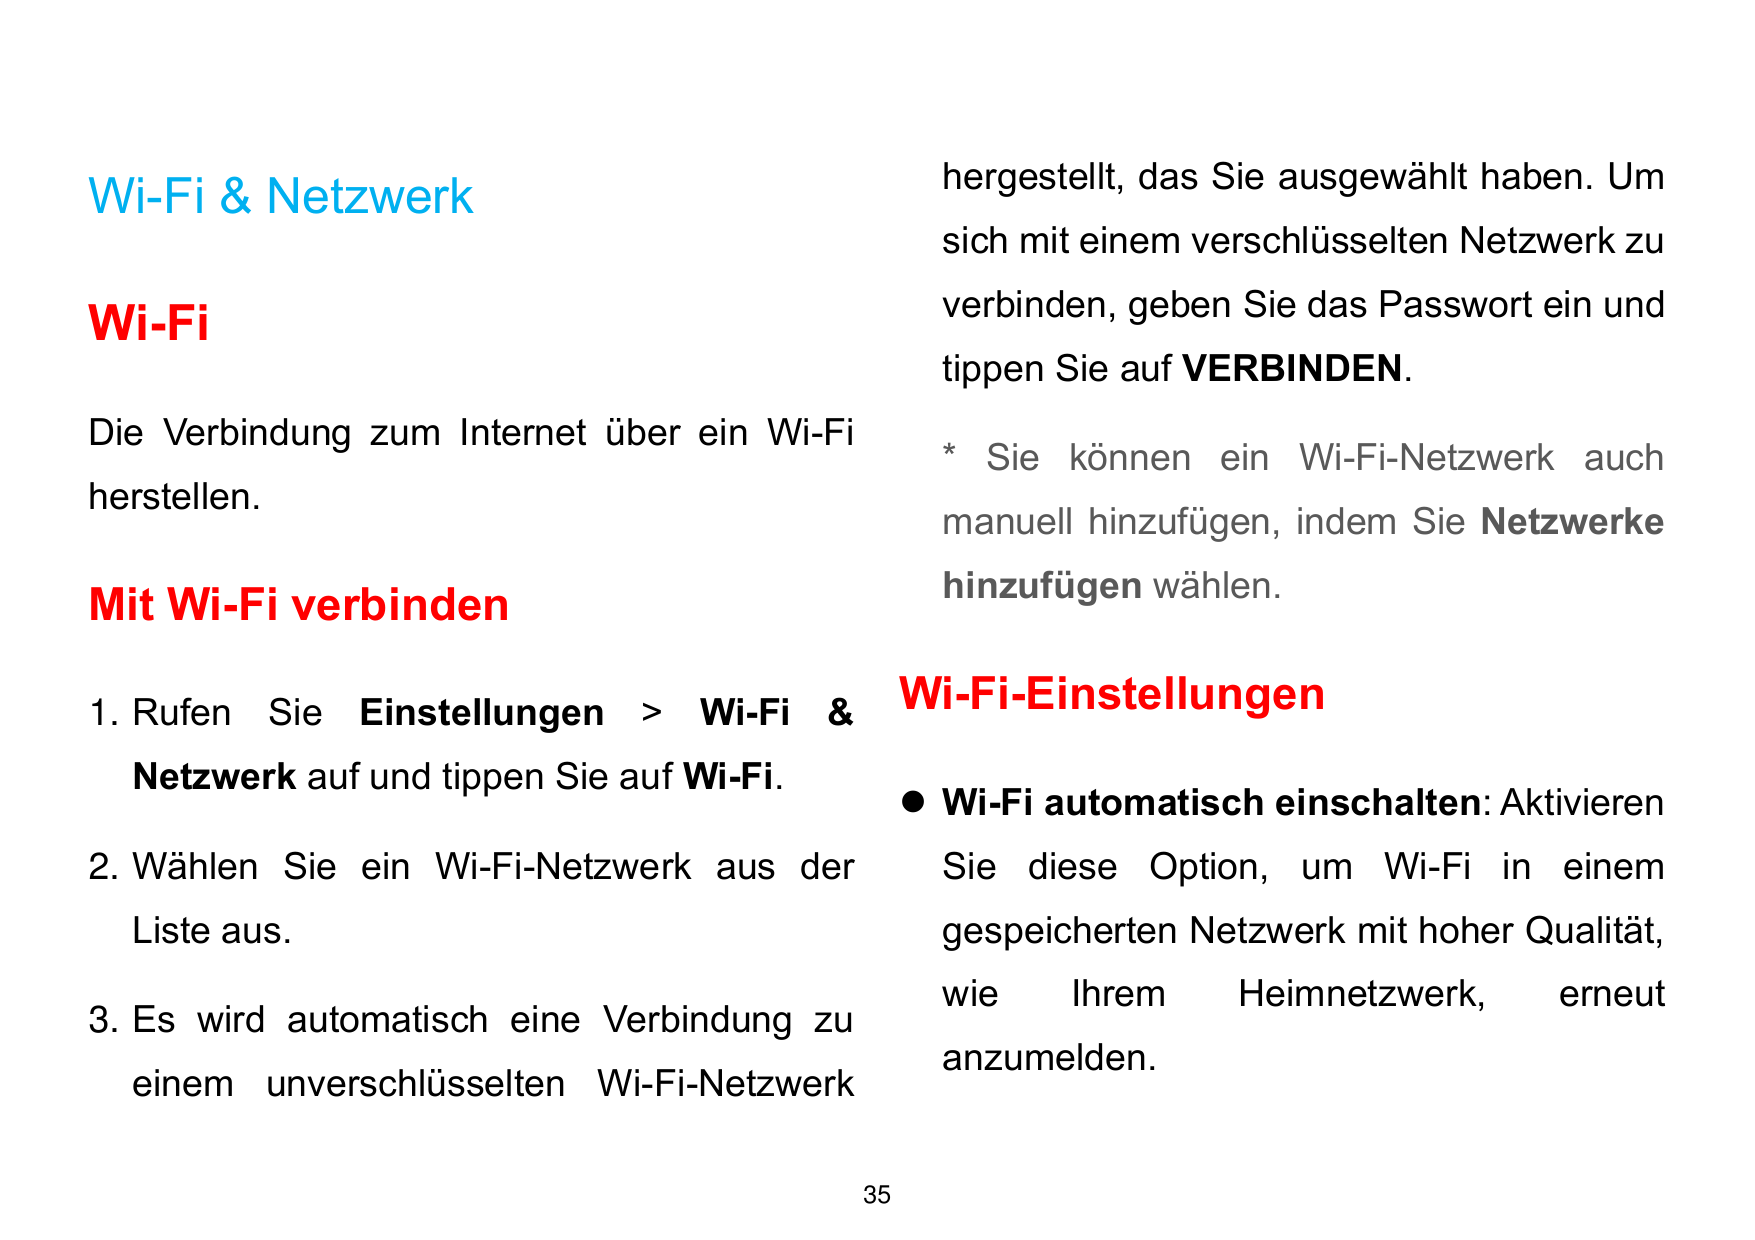 Wi-Fi & Netzwerkhergestellt, das Sie ausgewählt haben. UmWi-Fiverbinden, geben Sie das Passwort ein undsich mit einem verschlüss